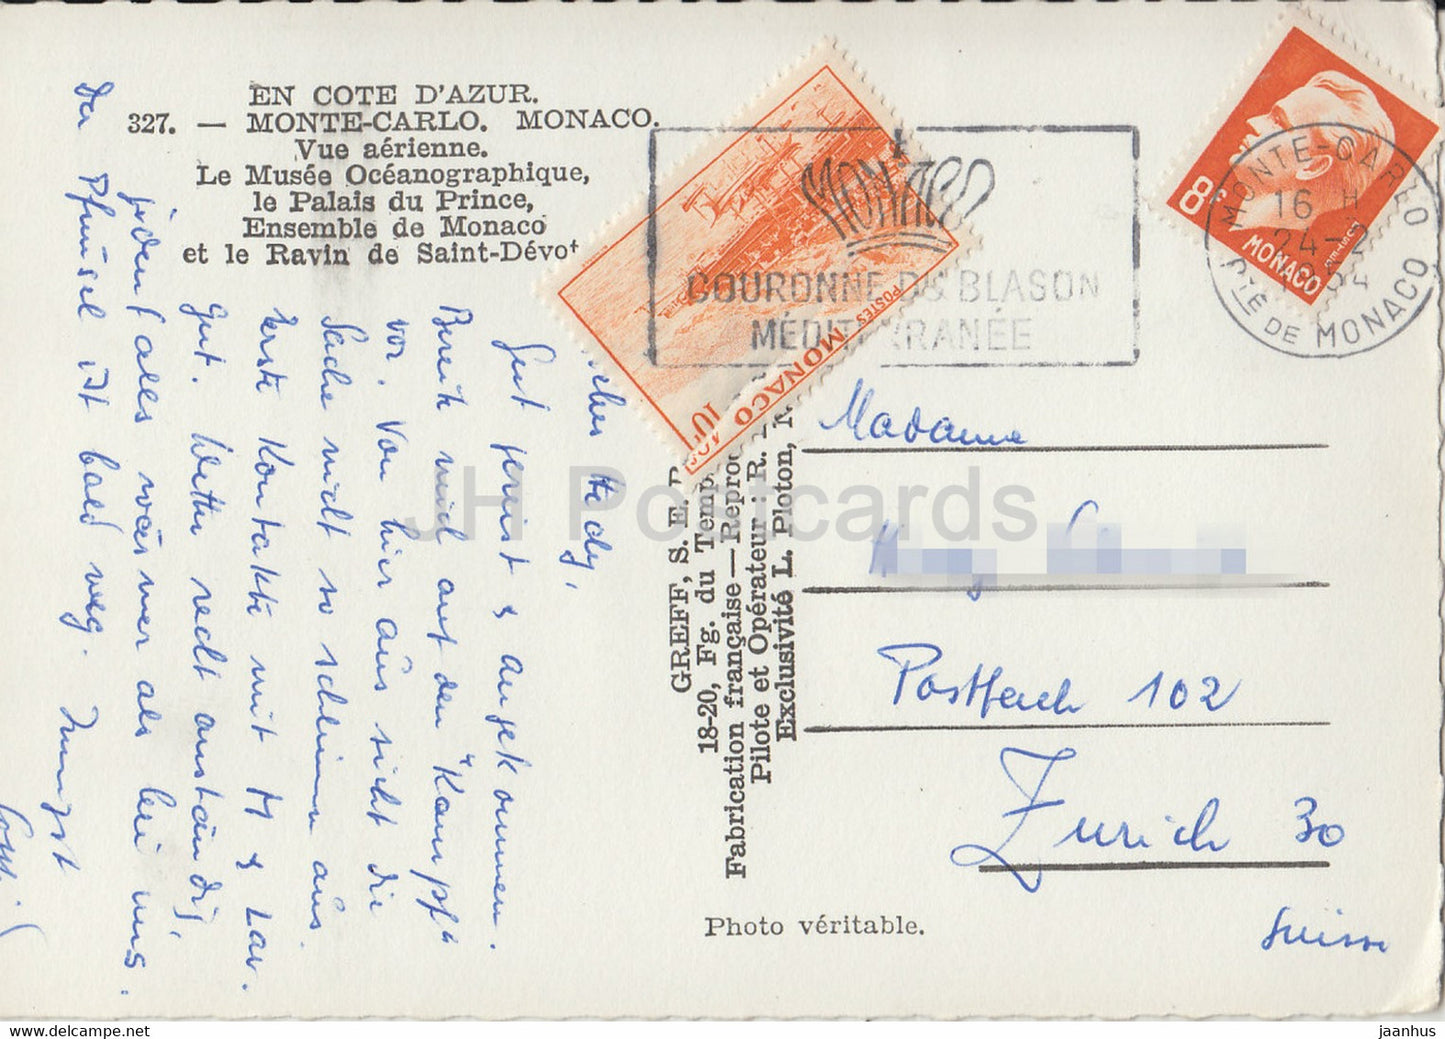 Monte Carlo - Vue Aerienne - Le Musee Oveanographique - Le Palais du Prince - 327 - old postcard - 1954 - Monaco - used